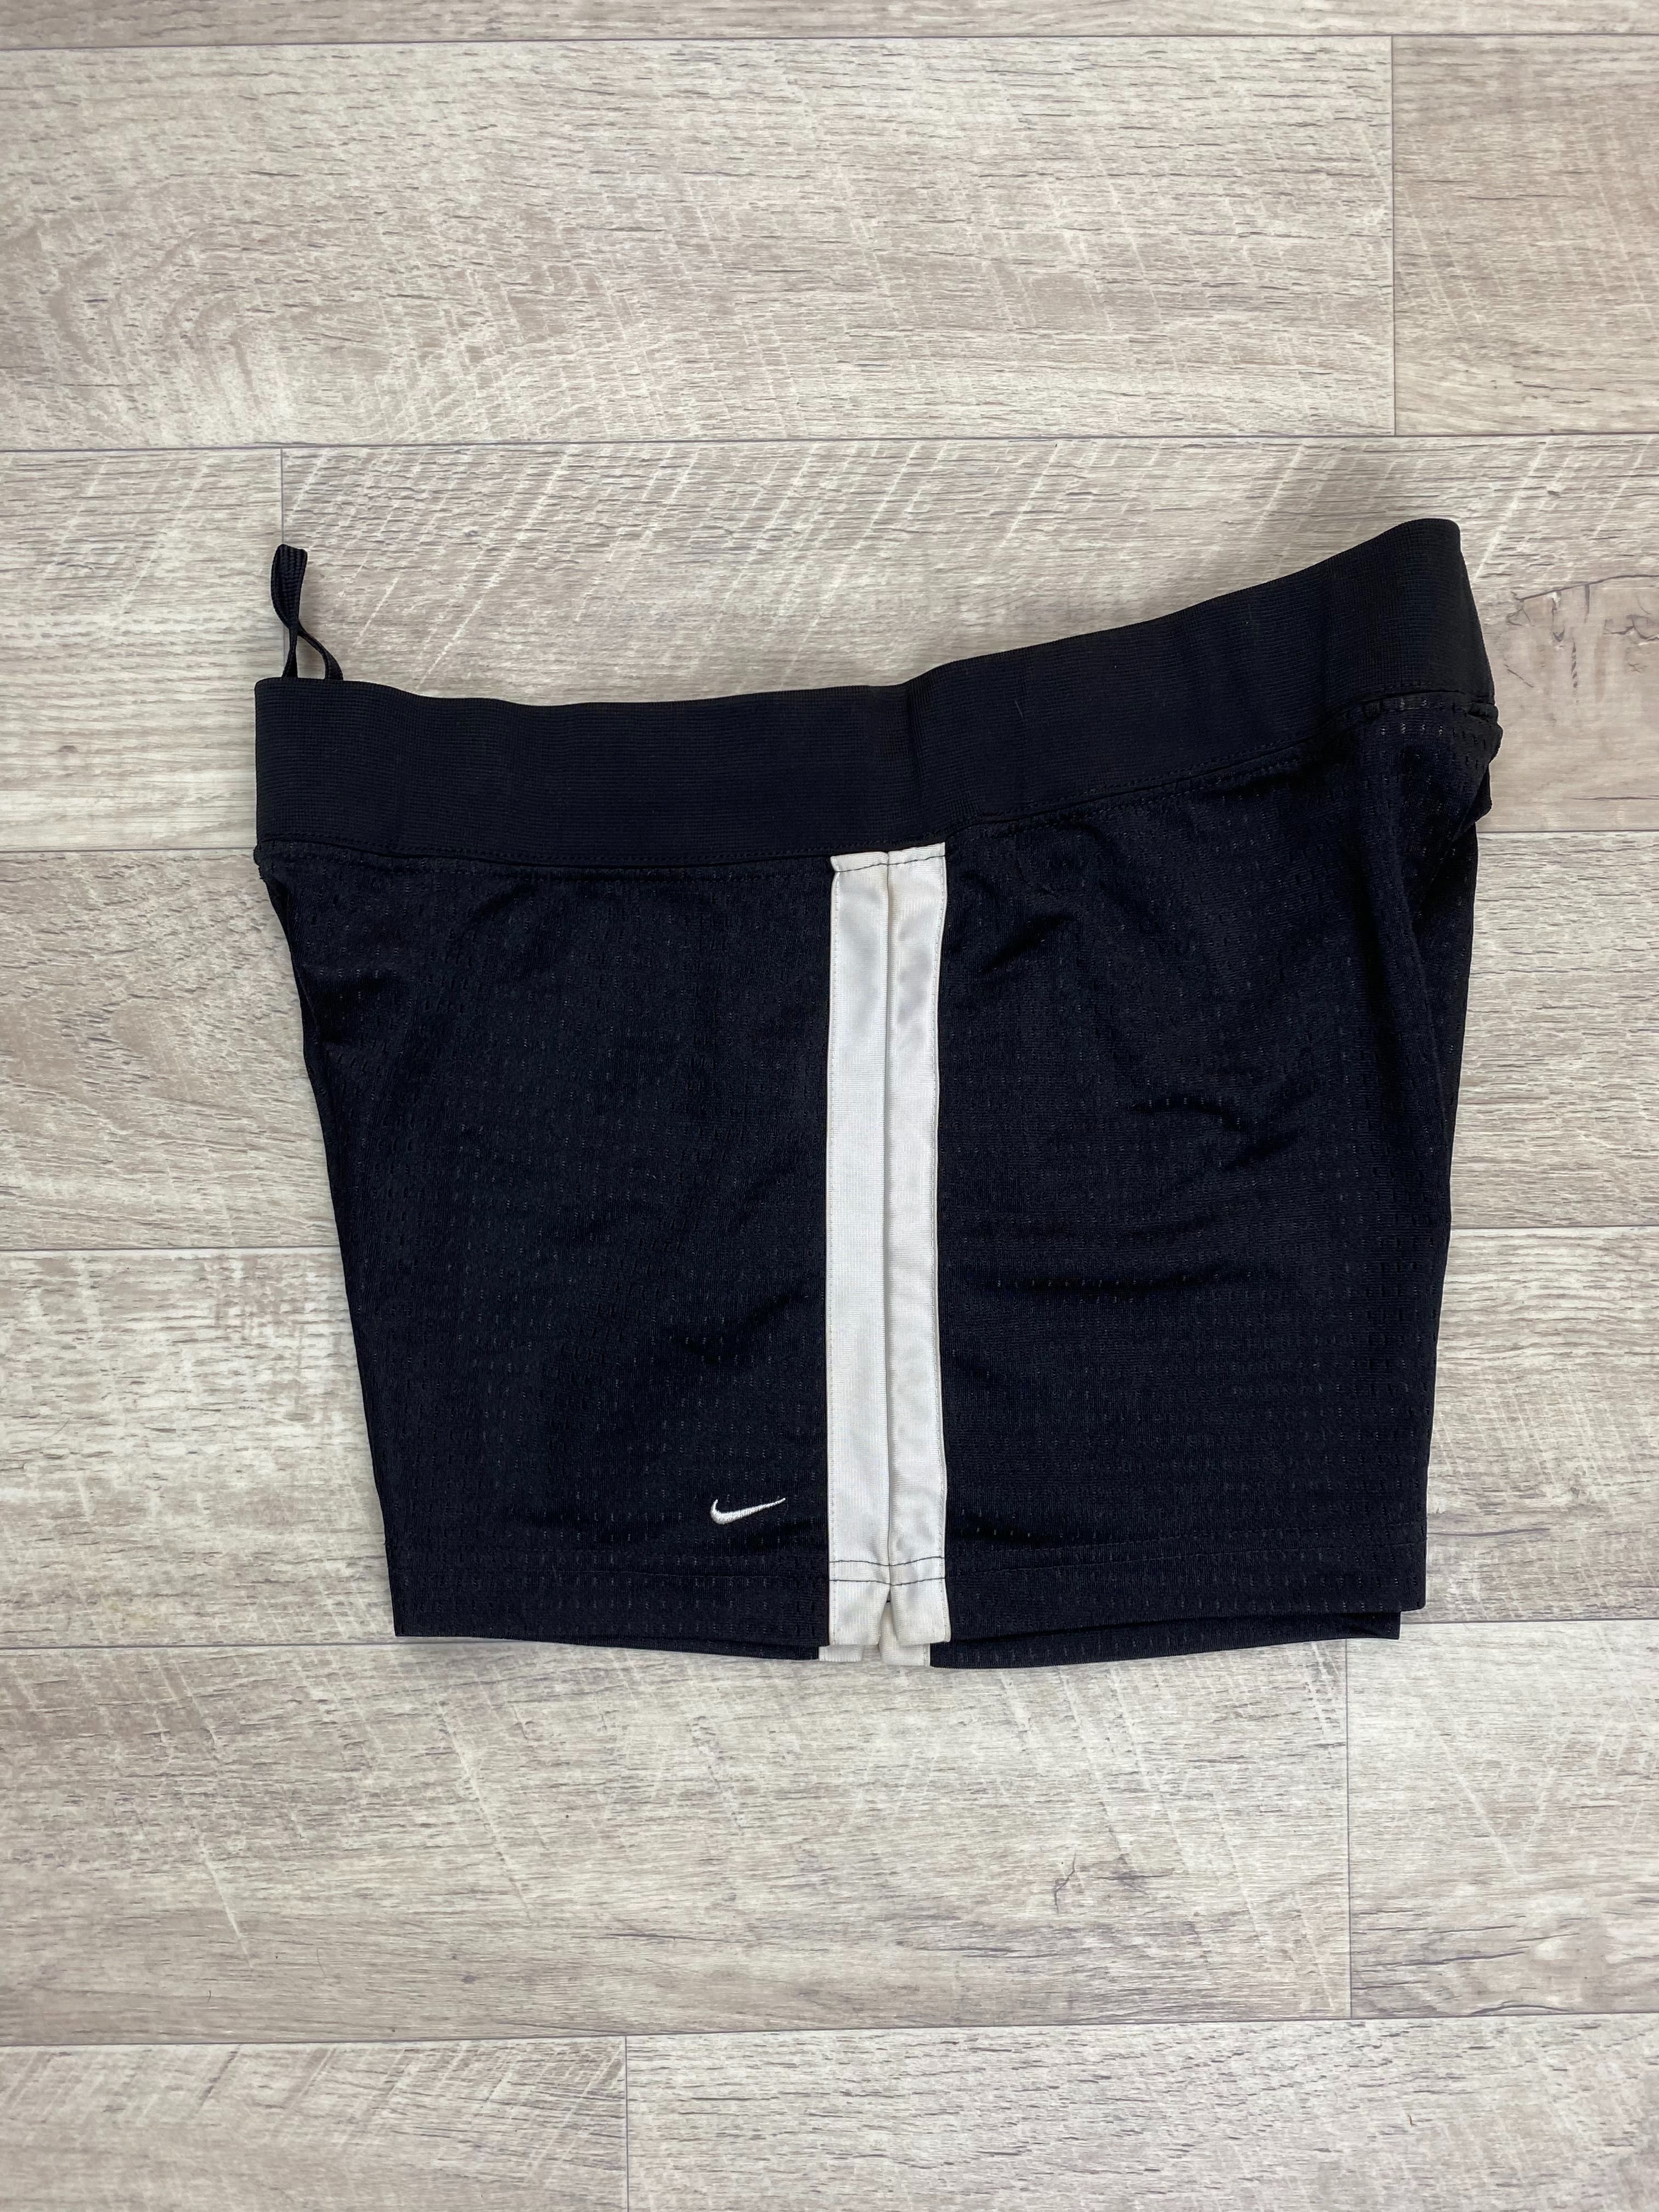 Nike шорты 08/10 размер M женские спортивные чёрные оригинал